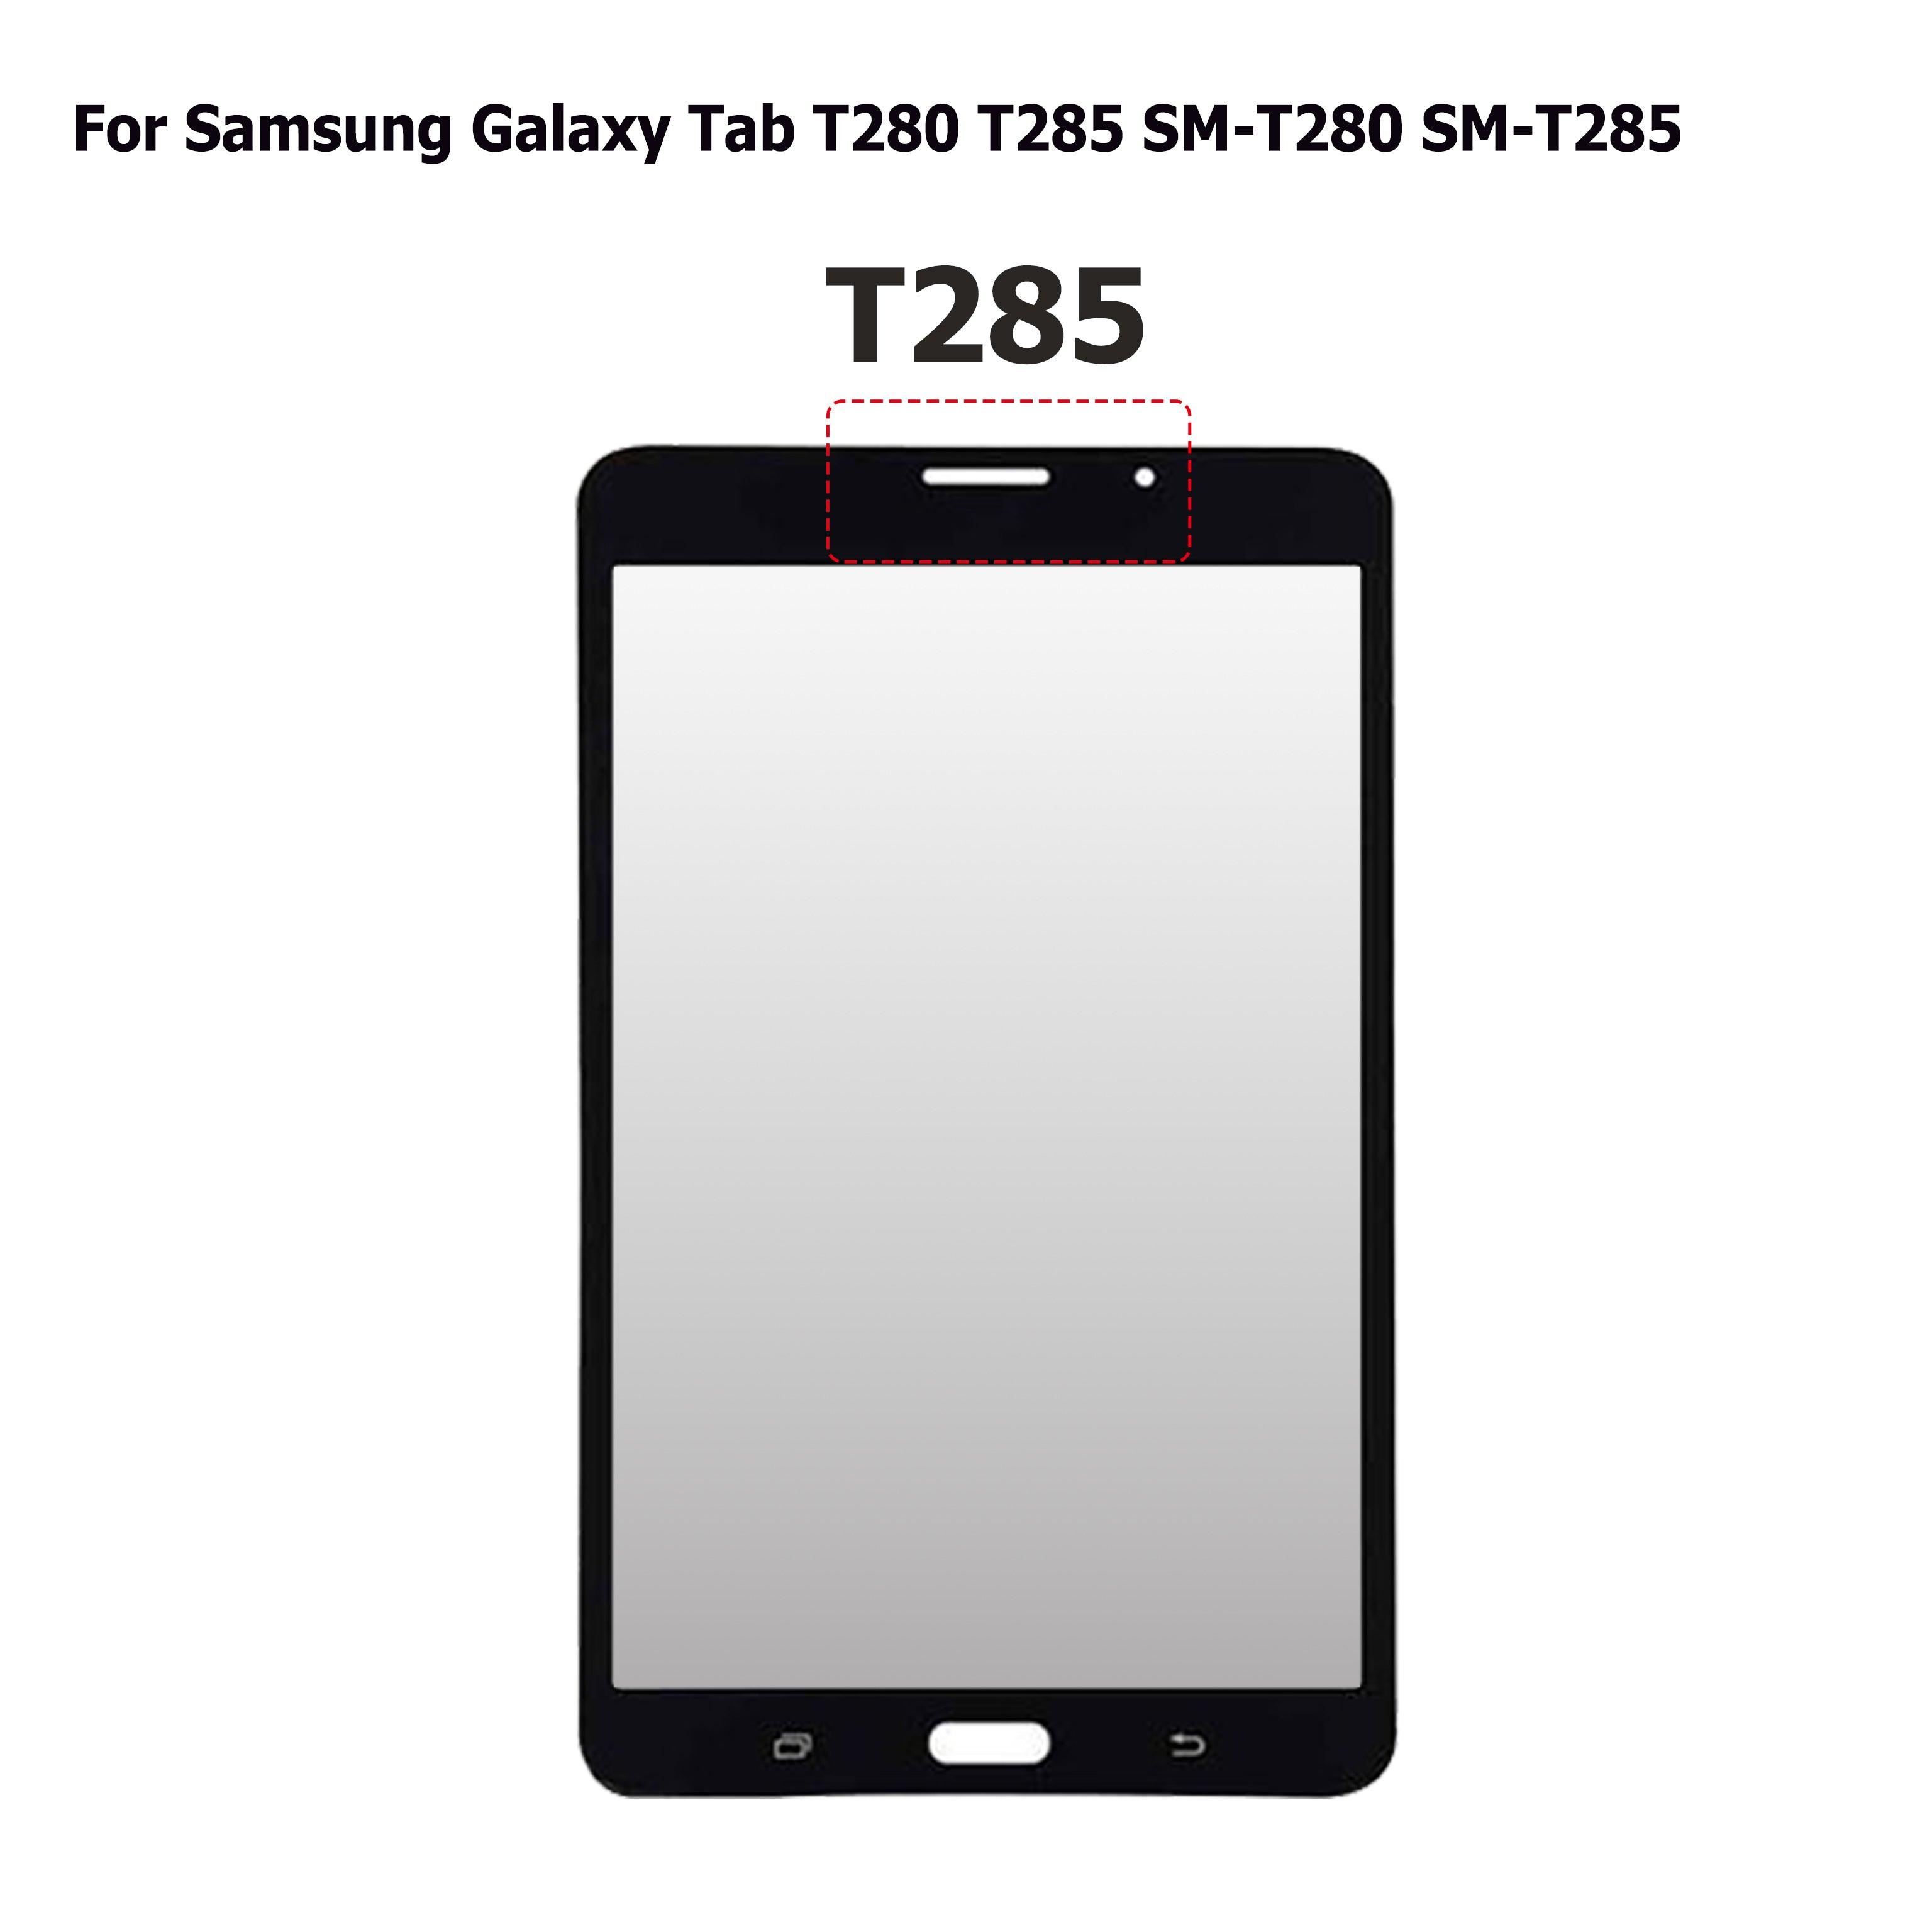 Touch Samsung Galaxy Tab A 7.0 T280 T285 a solo $ 100.00 Refaccion y puestos celulares, refurbish y microelectronica.- FixOEM